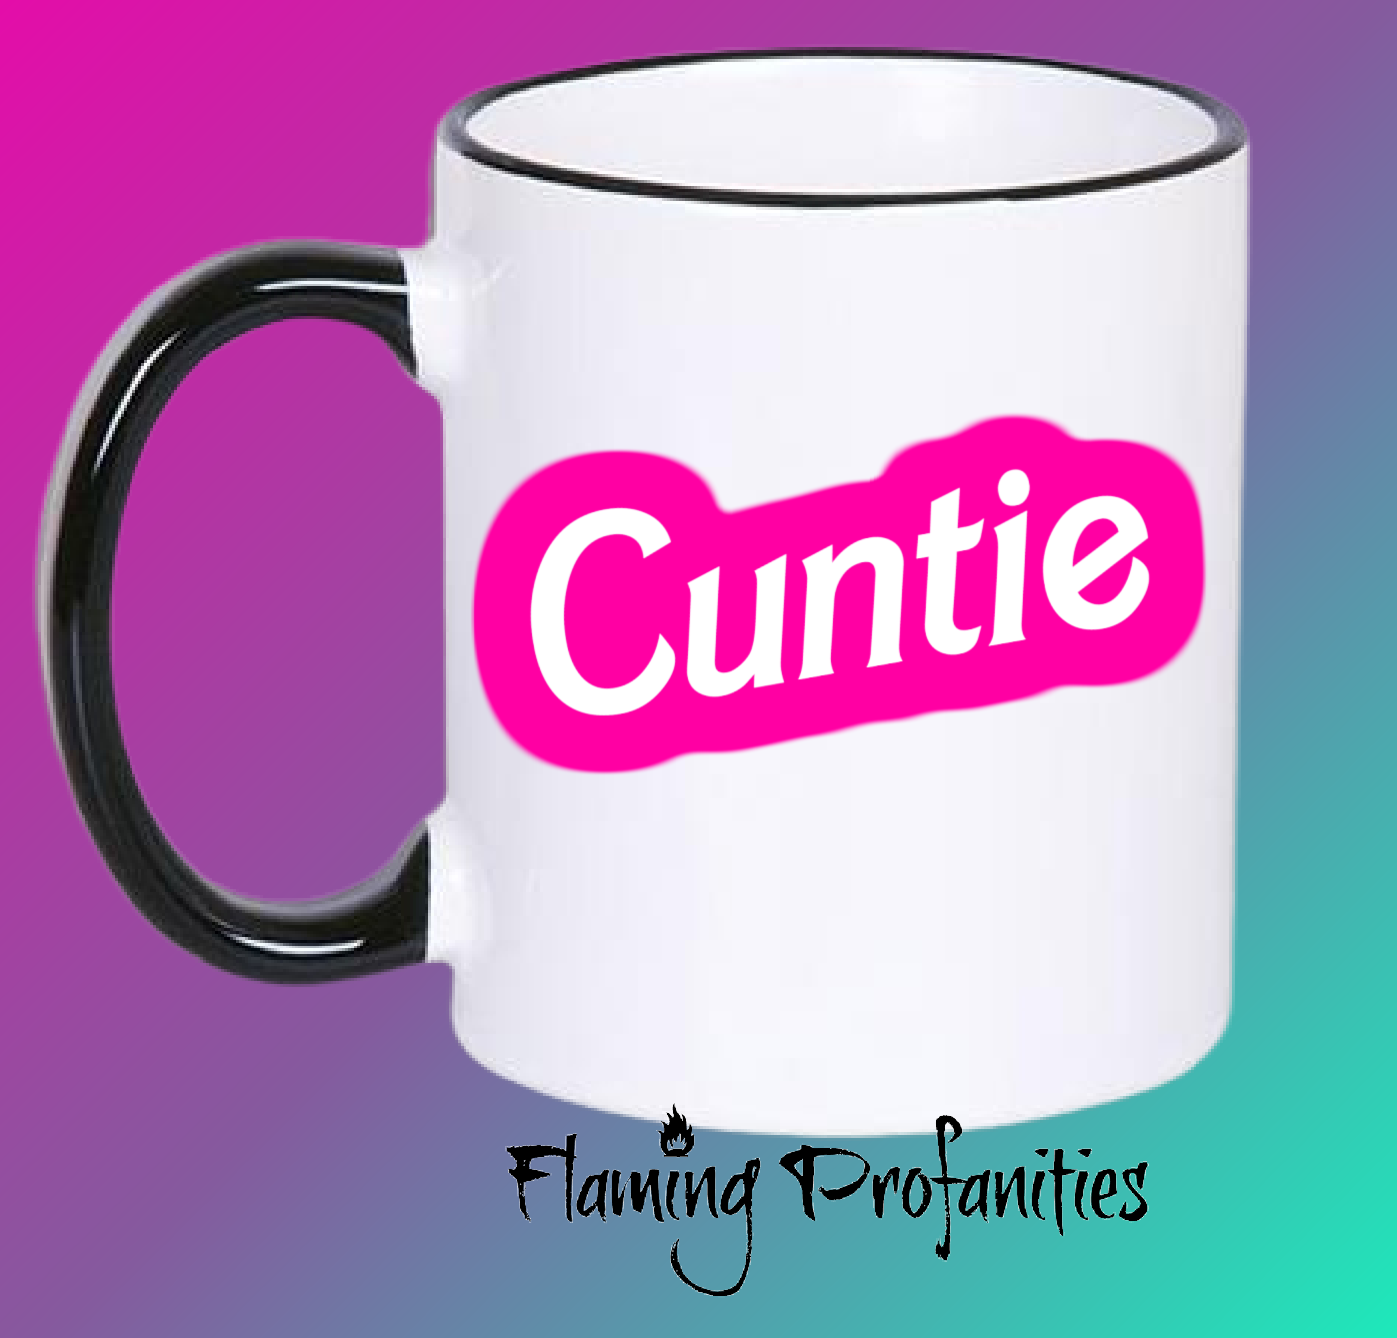 Cuntie Coffee Mug